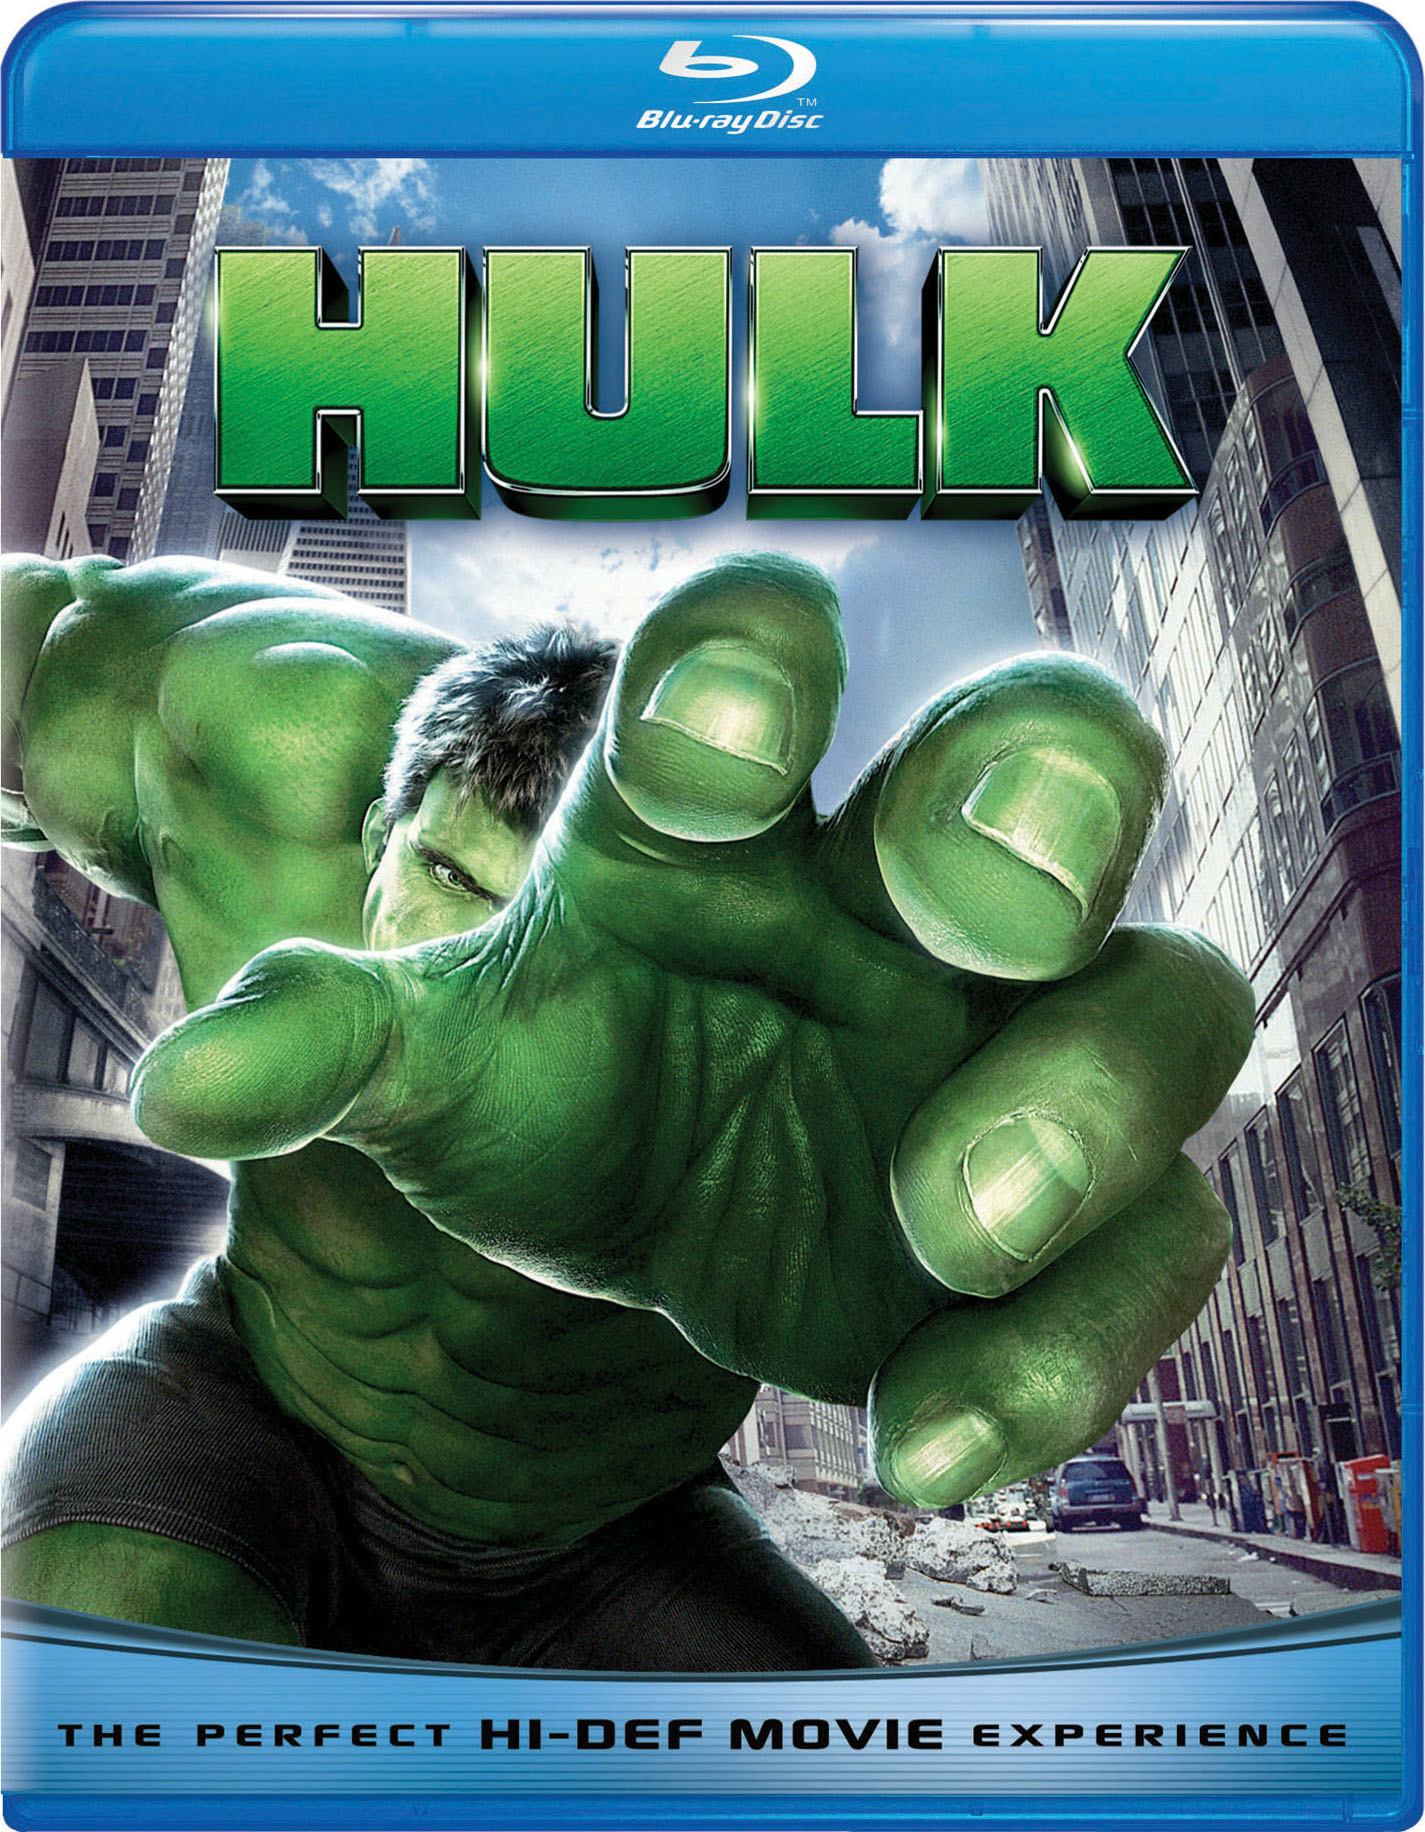 Hulk - Blu-ray [ 2003 ]  - Adventure Movies On Blu-ray - Movies On GRUV